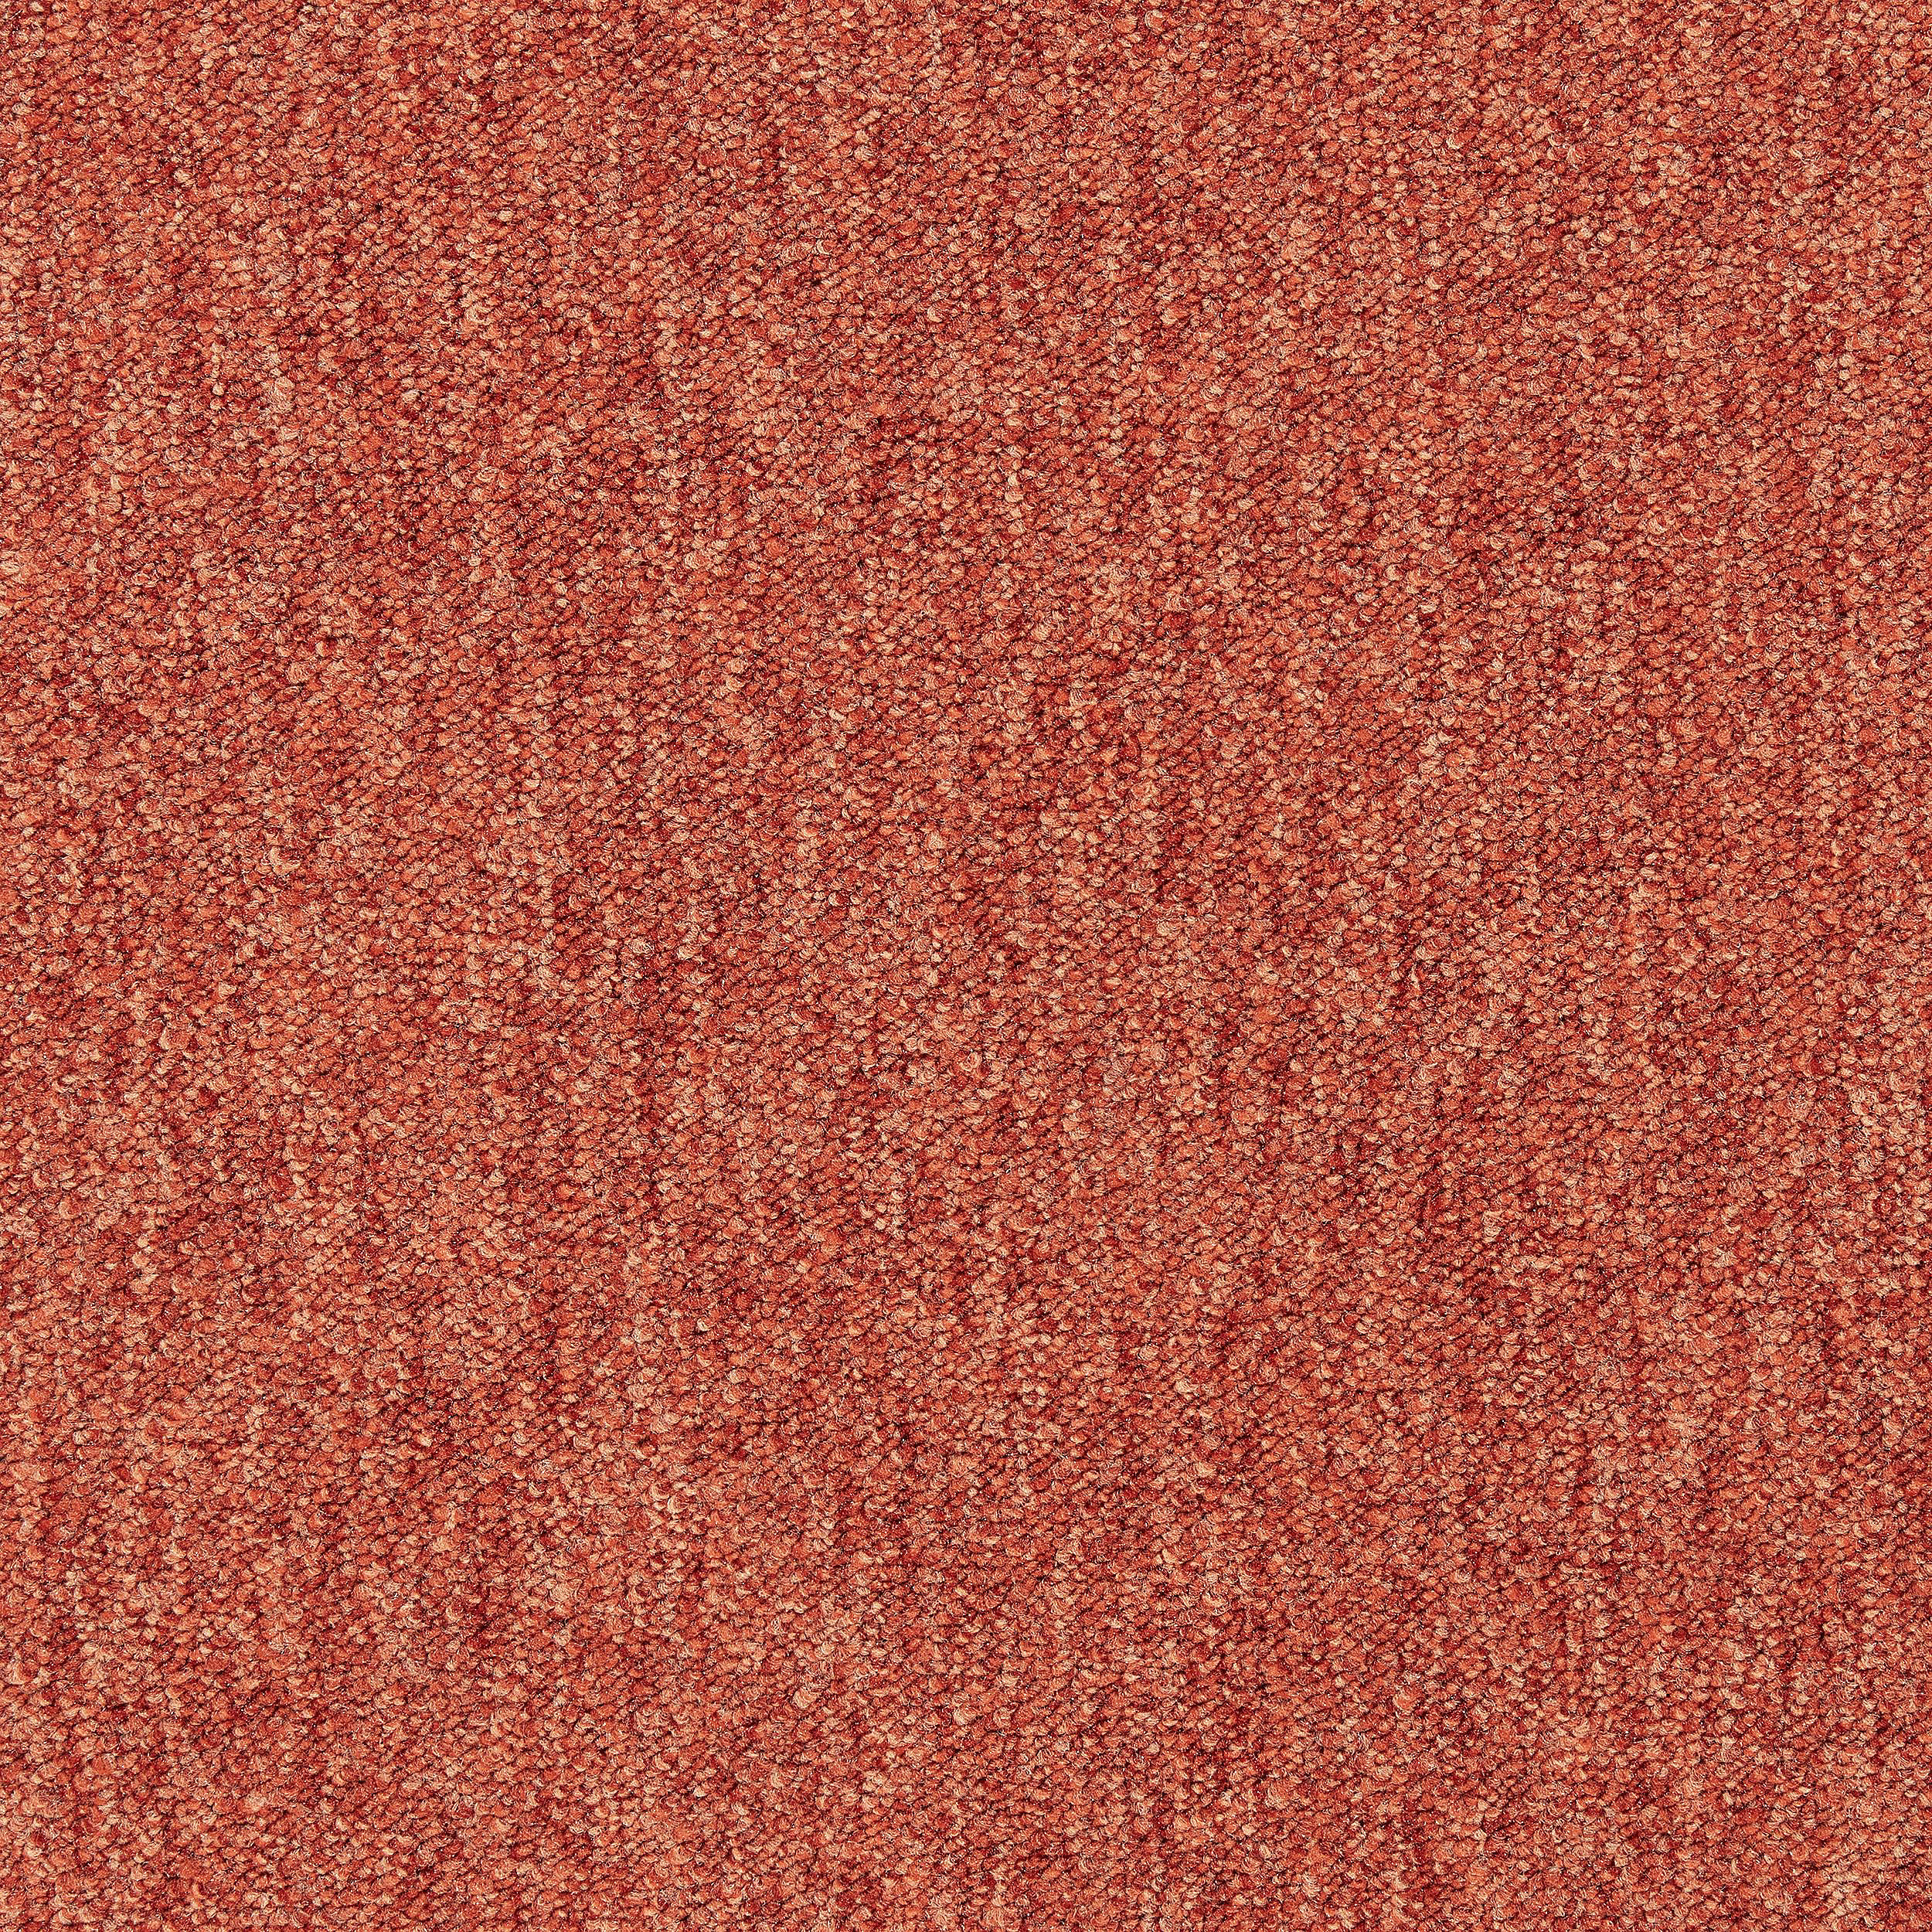 Heuga 530 II Carpet Tile In Terracotta afbeeldingnummer 9